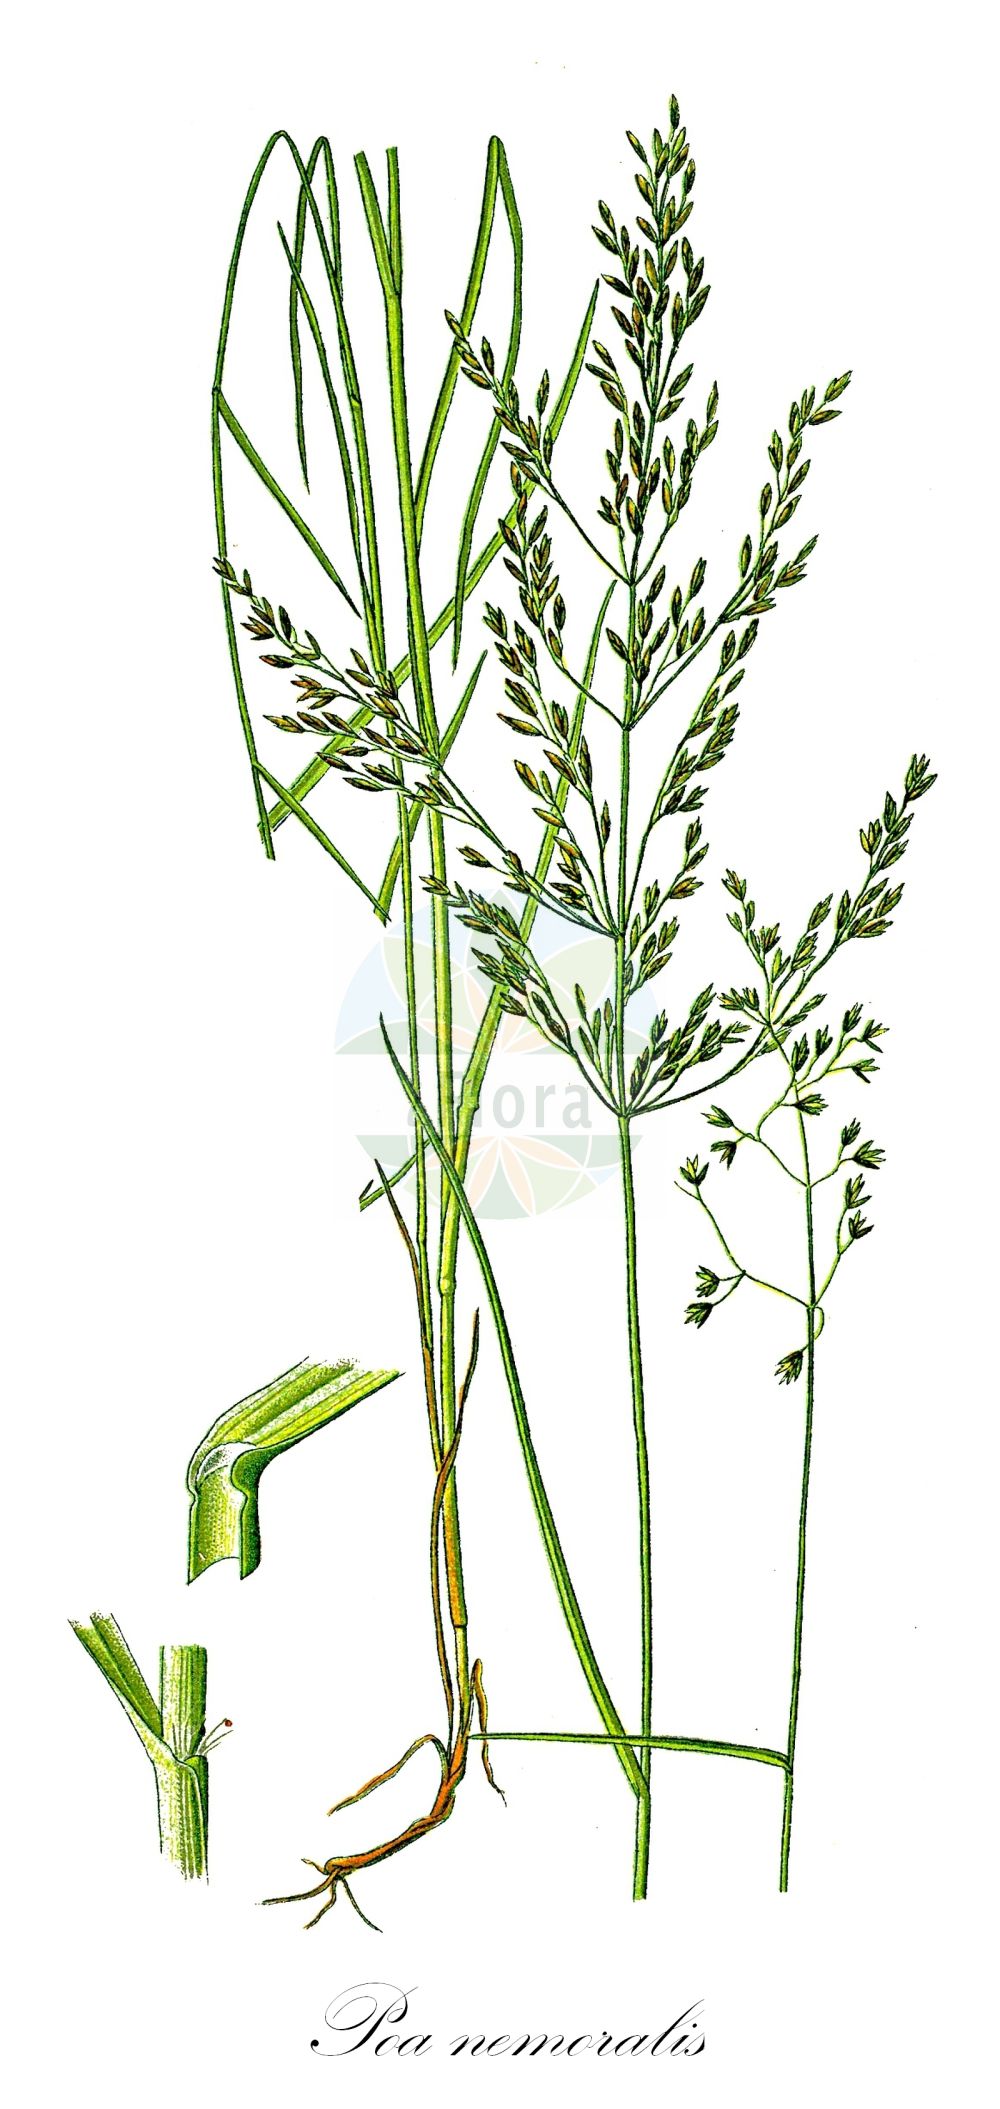 Historische Abbildung von Poa nemoralis (Hain-Rispengras - Wood Meadow-grass). Das Bild zeigt Blatt, Bluete, Frucht und Same. ---- Historical Drawing of Poa nemoralis (Hain-Rispengras - Wood Meadow-grass). The image is showing leaf, flower, fruit and seed.(Poa nemoralis,Hain-Rispengras,Wood Meadow-grass,Poa nemoralis,Poa nemoralis var. rigidula,Hain-Rispengras,Wood Meadow-grass,Wood Bluegrass,Wood Poa,Poa,Rispengras,Bluegrass,Poaceae,Süßgräser,Grass family,Blatt,Bluete,Frucht,Same,leaf,flower,fruit,seed,Thomé (1885))